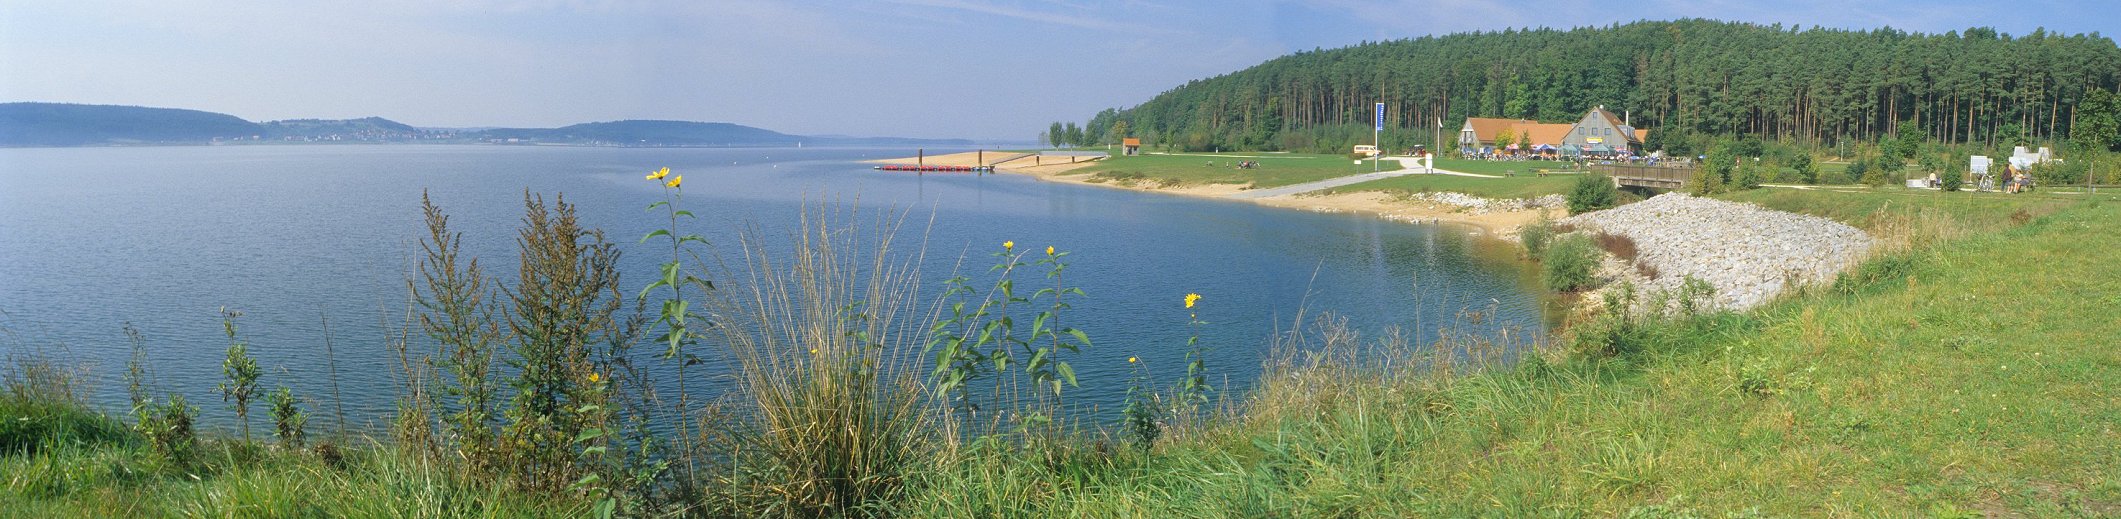 Fränkisches Seenland - Großer Brombachsee